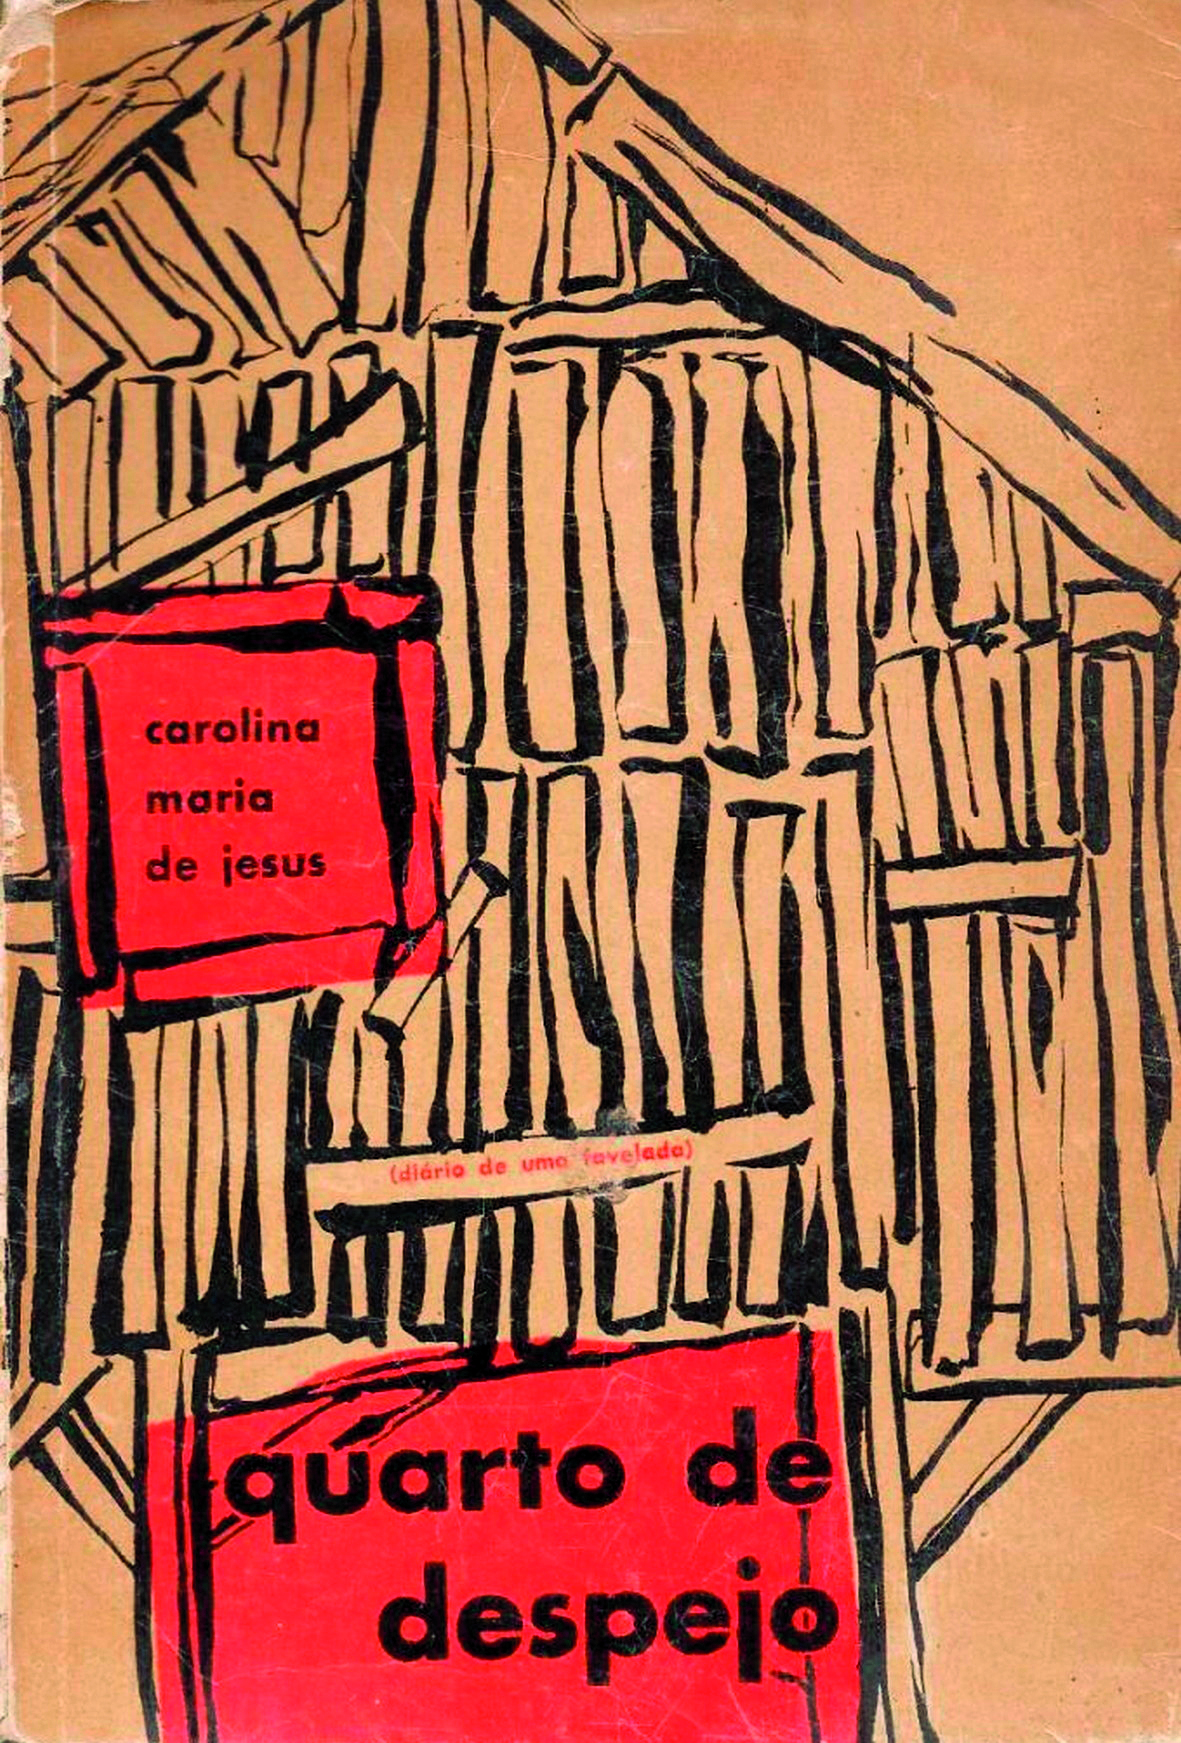 Fotografia. Capa de livro com ilustração representando a fachada de uma moradia simples, construída com pedaços de madeira. À esquerda, em um quadro vermelho simulando uma janela, o texto: 'Carolina Maria de Jesus'. Na parte inferior, em um quadro vermelho, o texto: 'Quarto de despejo'.